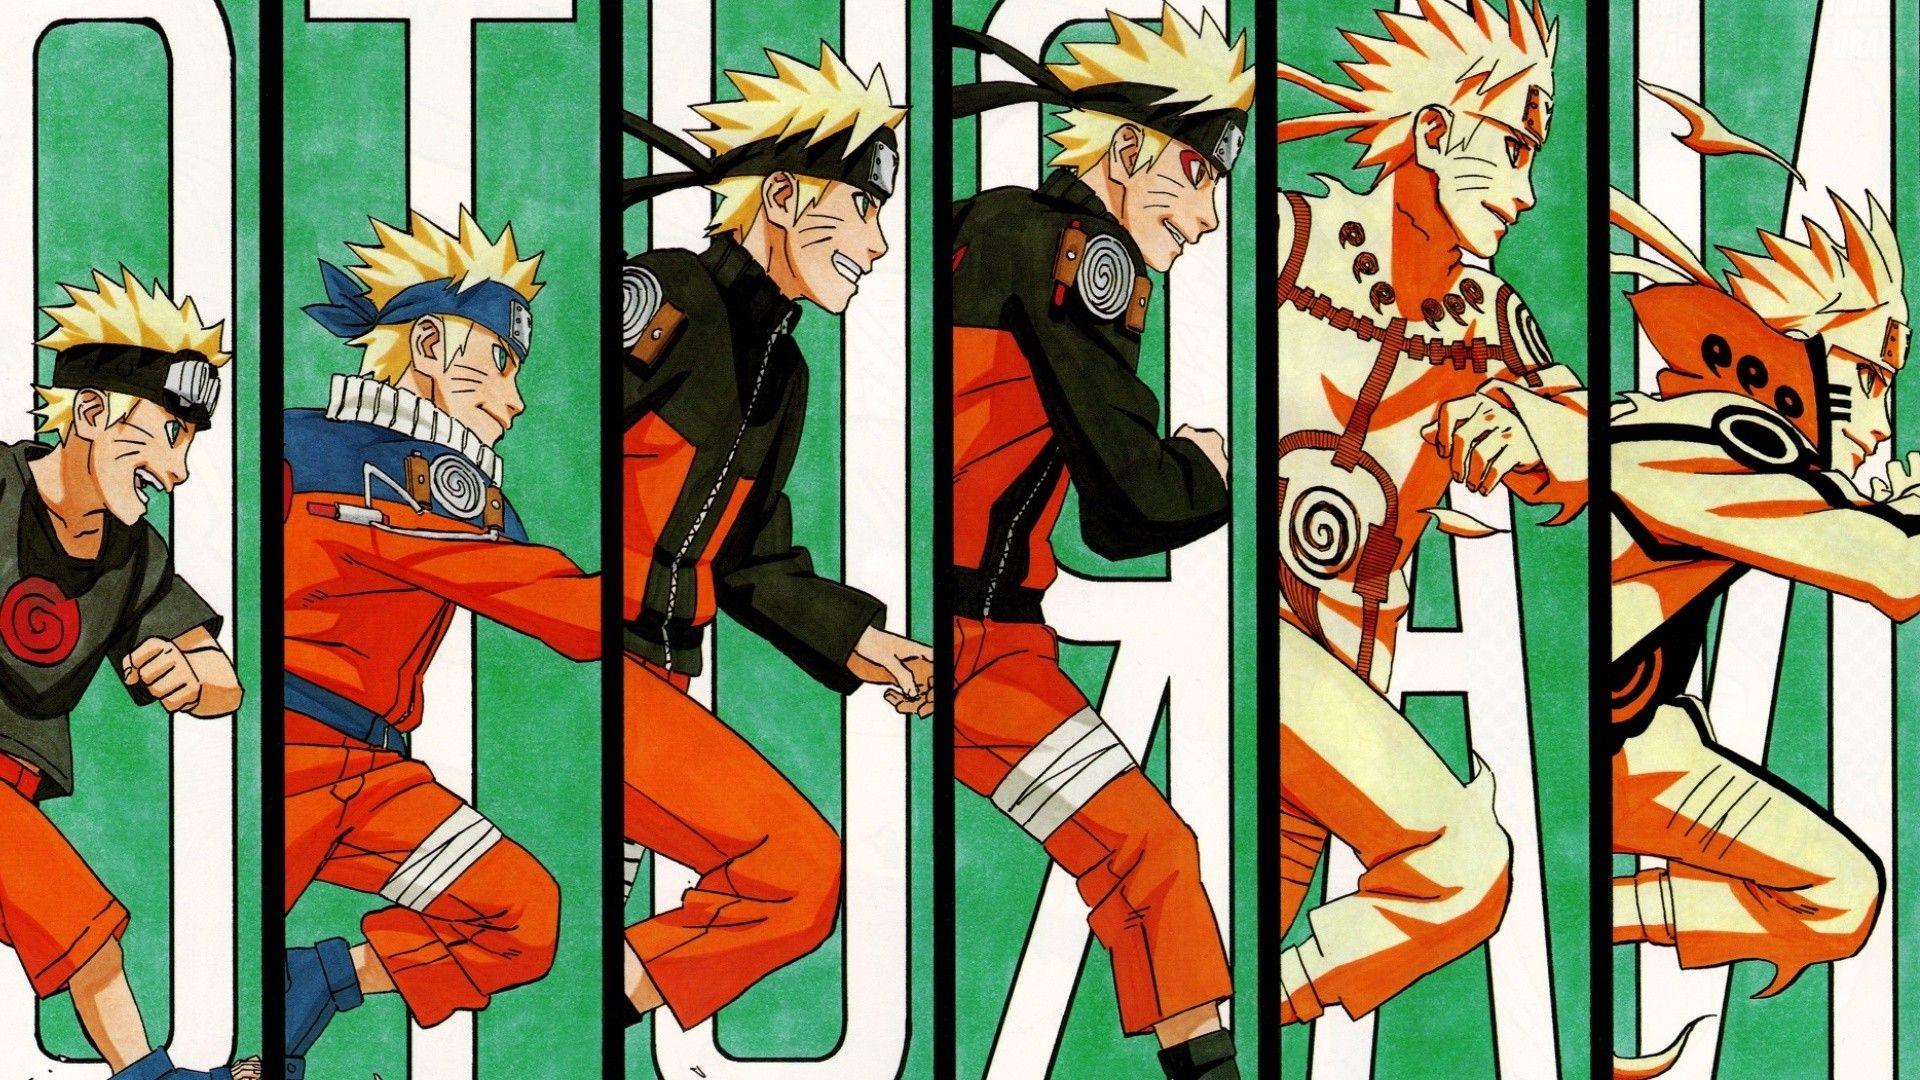 Naruto Manga Wallpapers - Wallpaper Cave